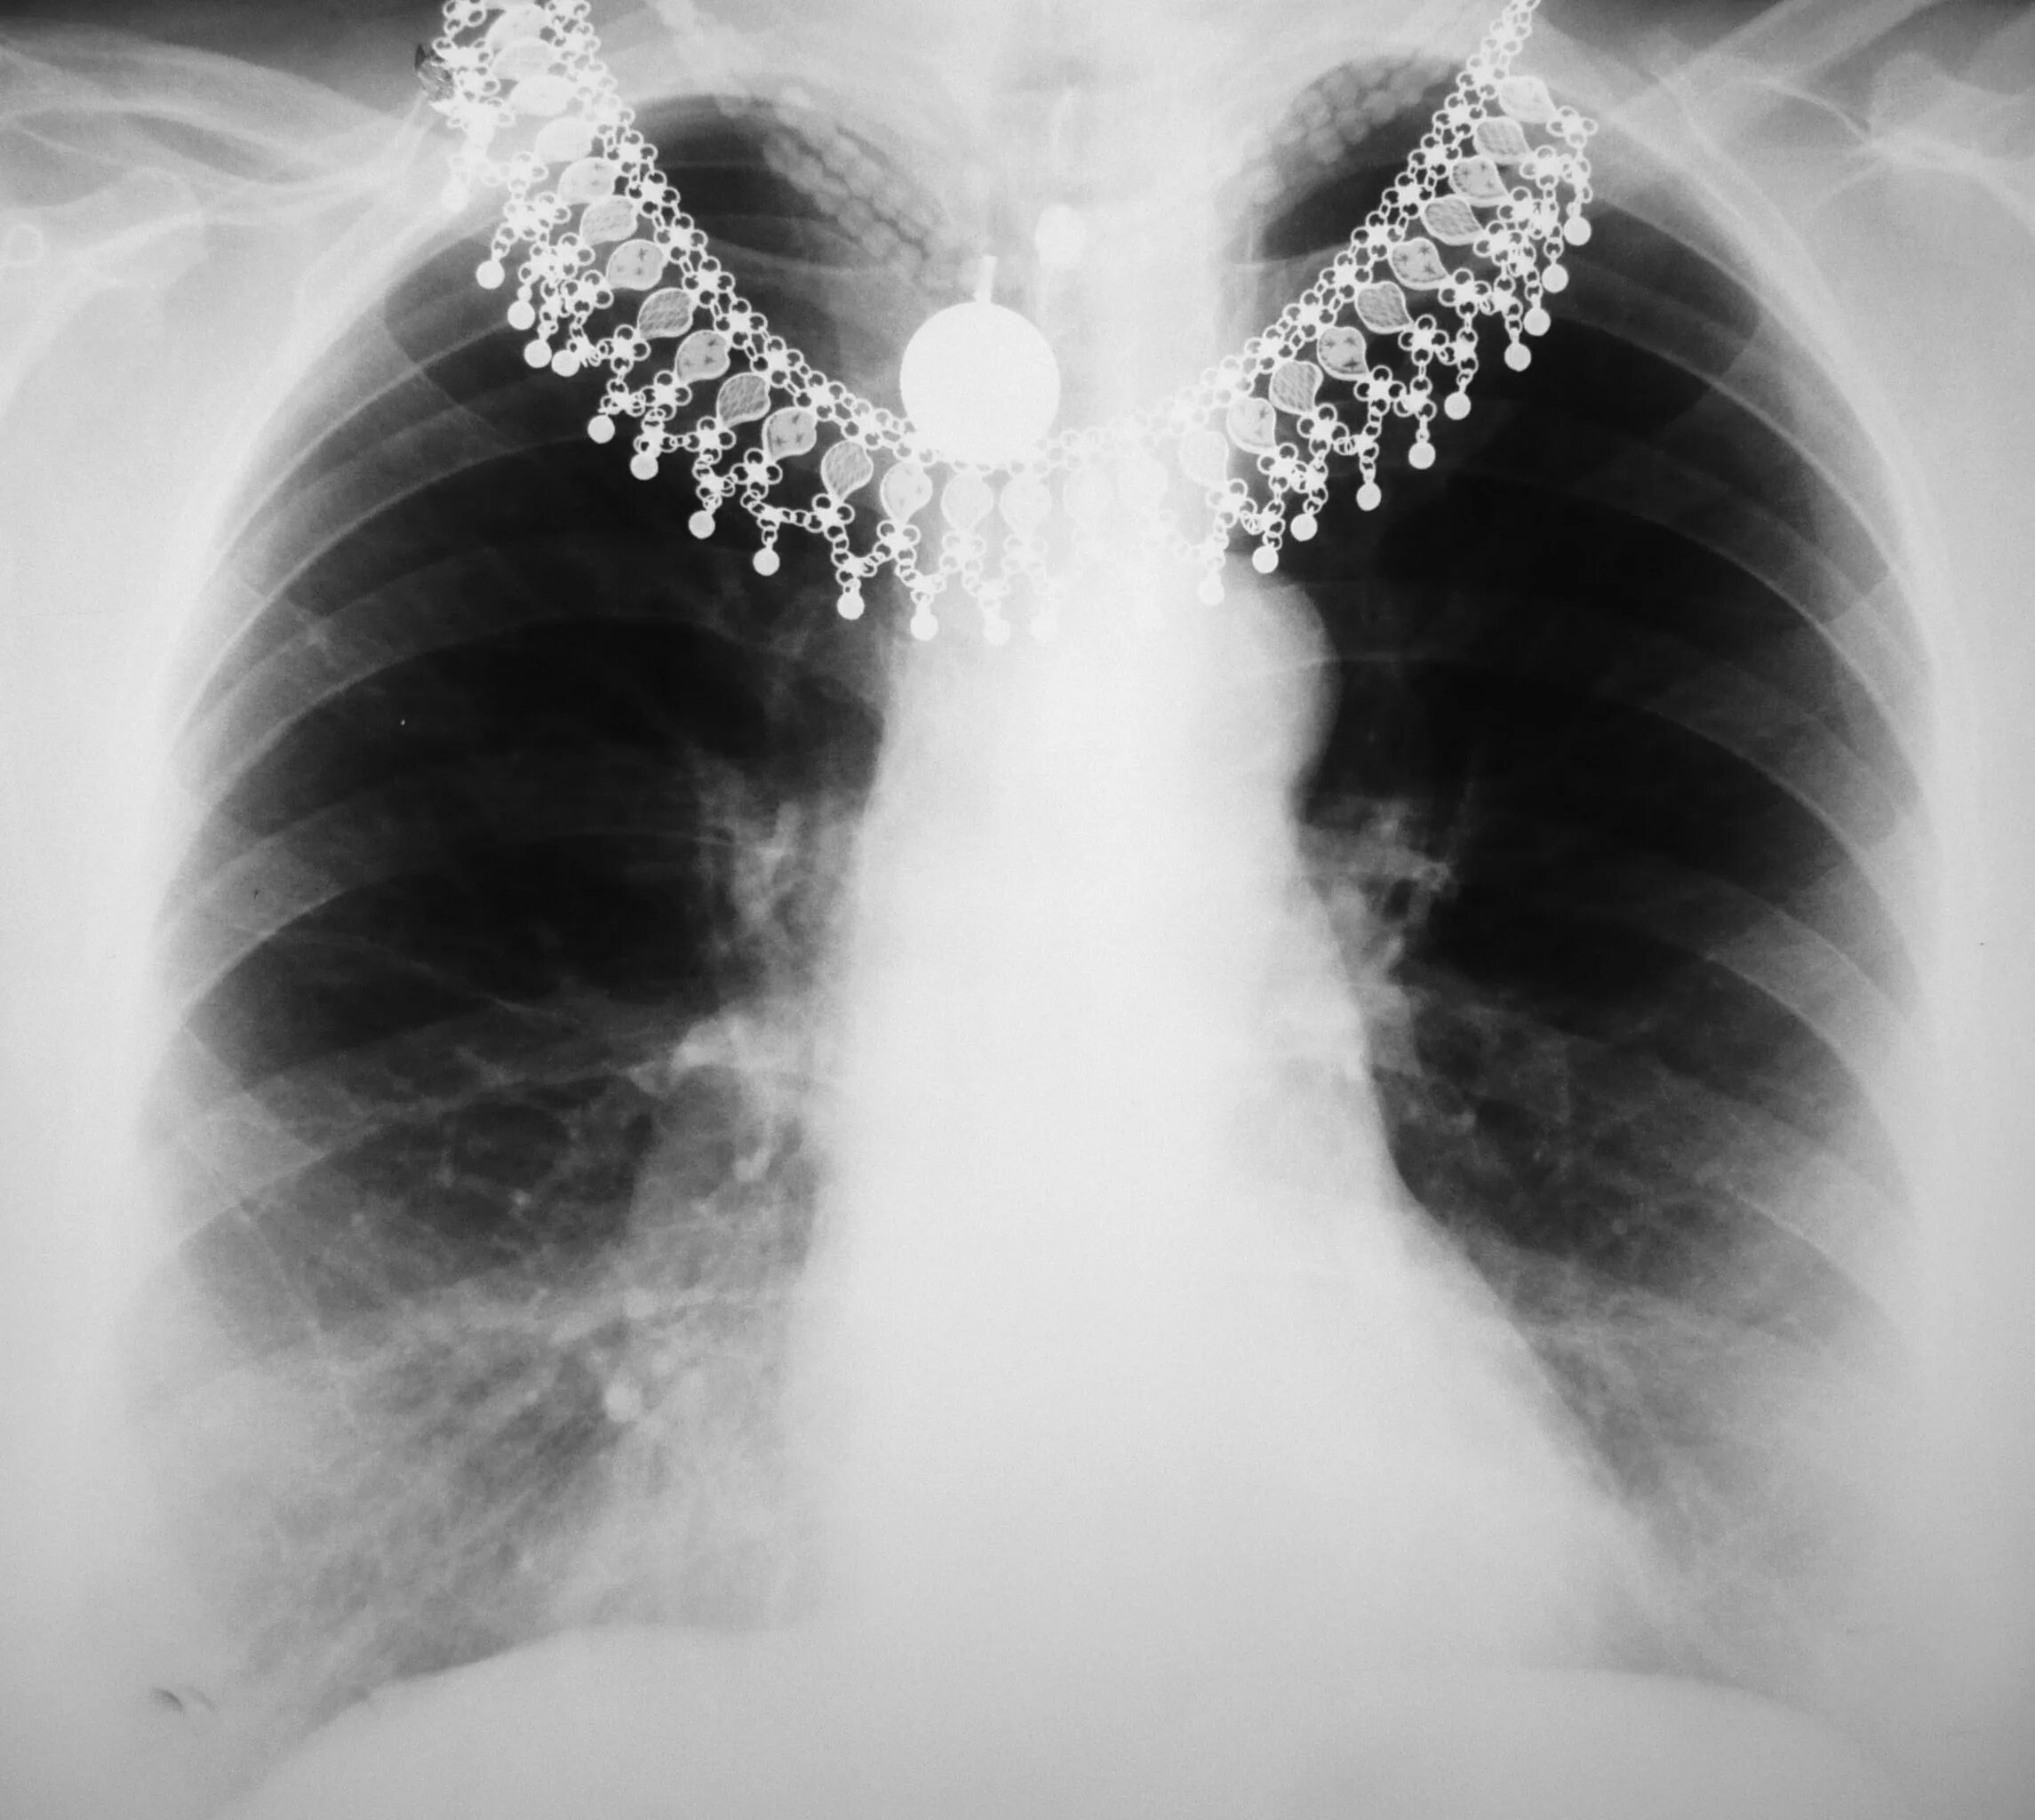 Снимок. Рентген снимок грудины. Рентгенограмма грудины. Радиография грудной клетки. Рентген снимки грудной клетки.